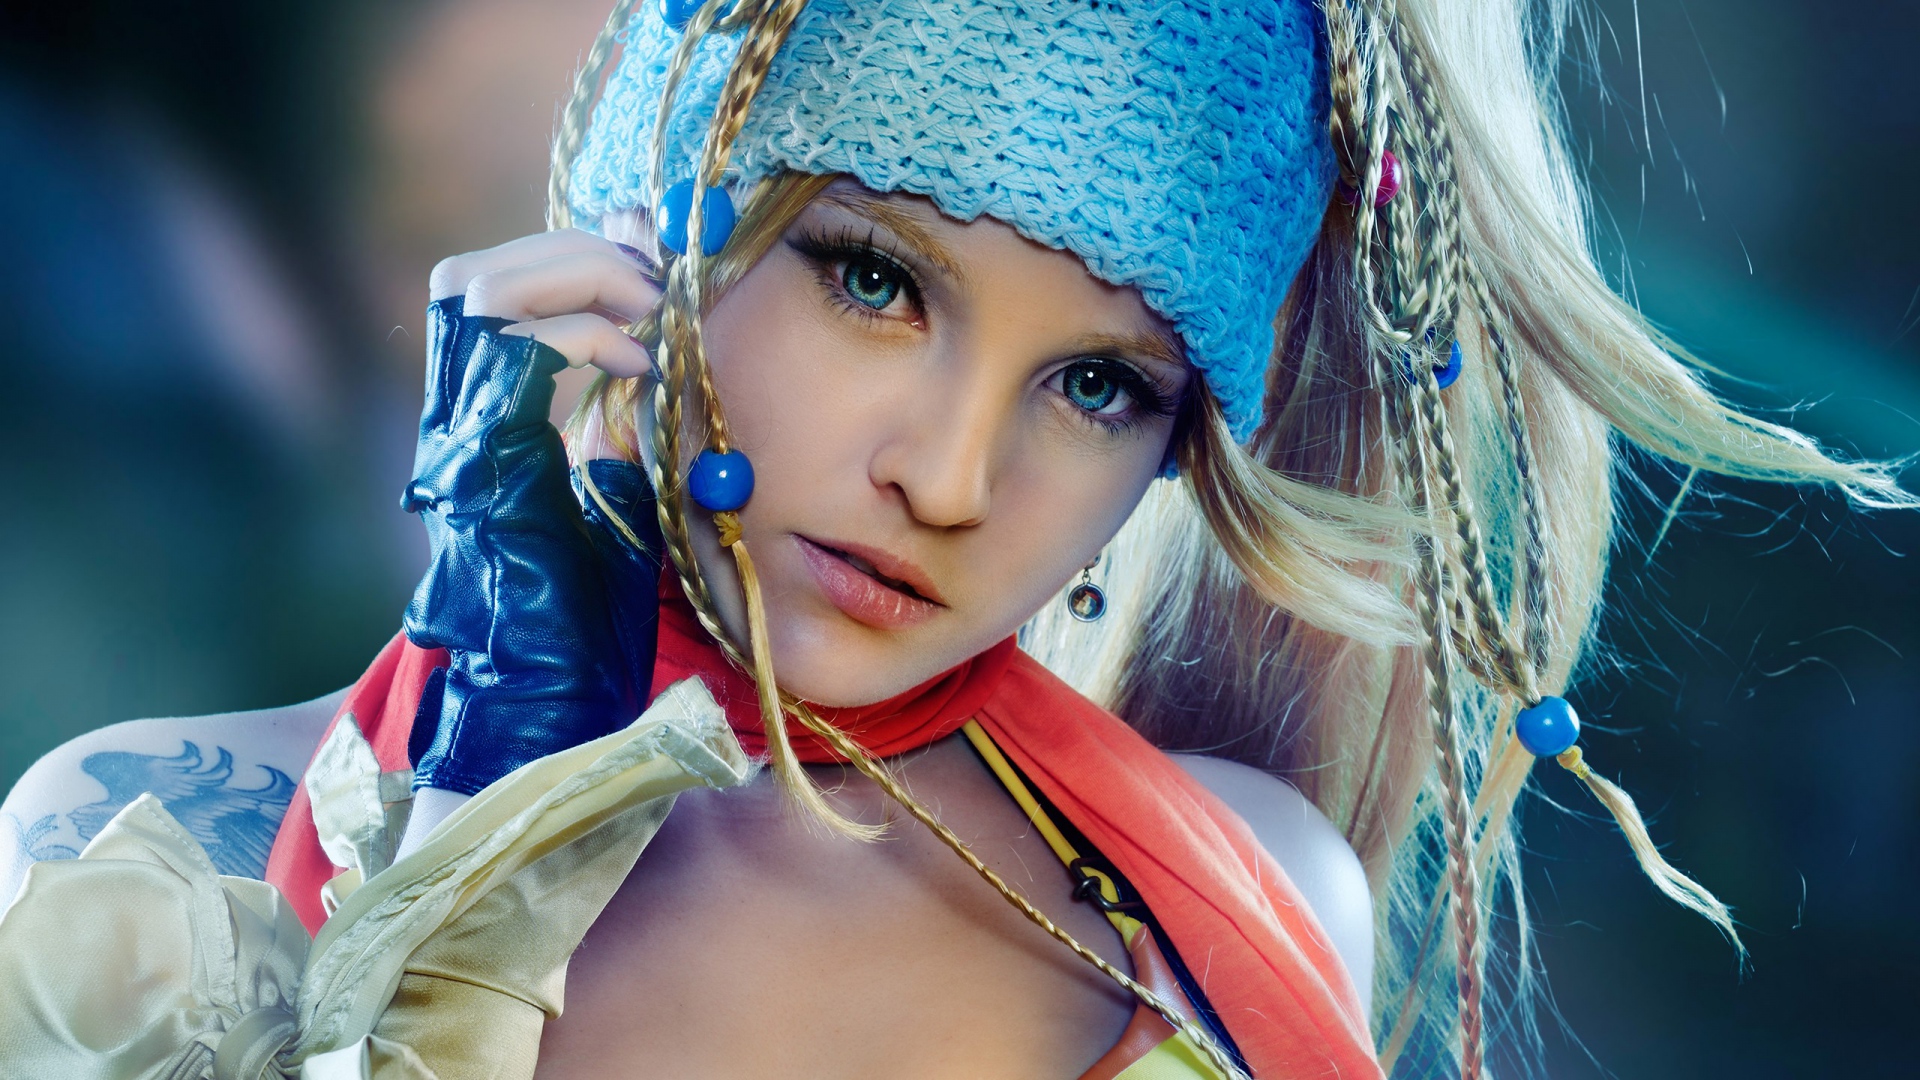 Rikku, Final Fantasy, Stylish Girl - Stylish Girl Image Full Hd , HD Wallpaper & Backgrounds